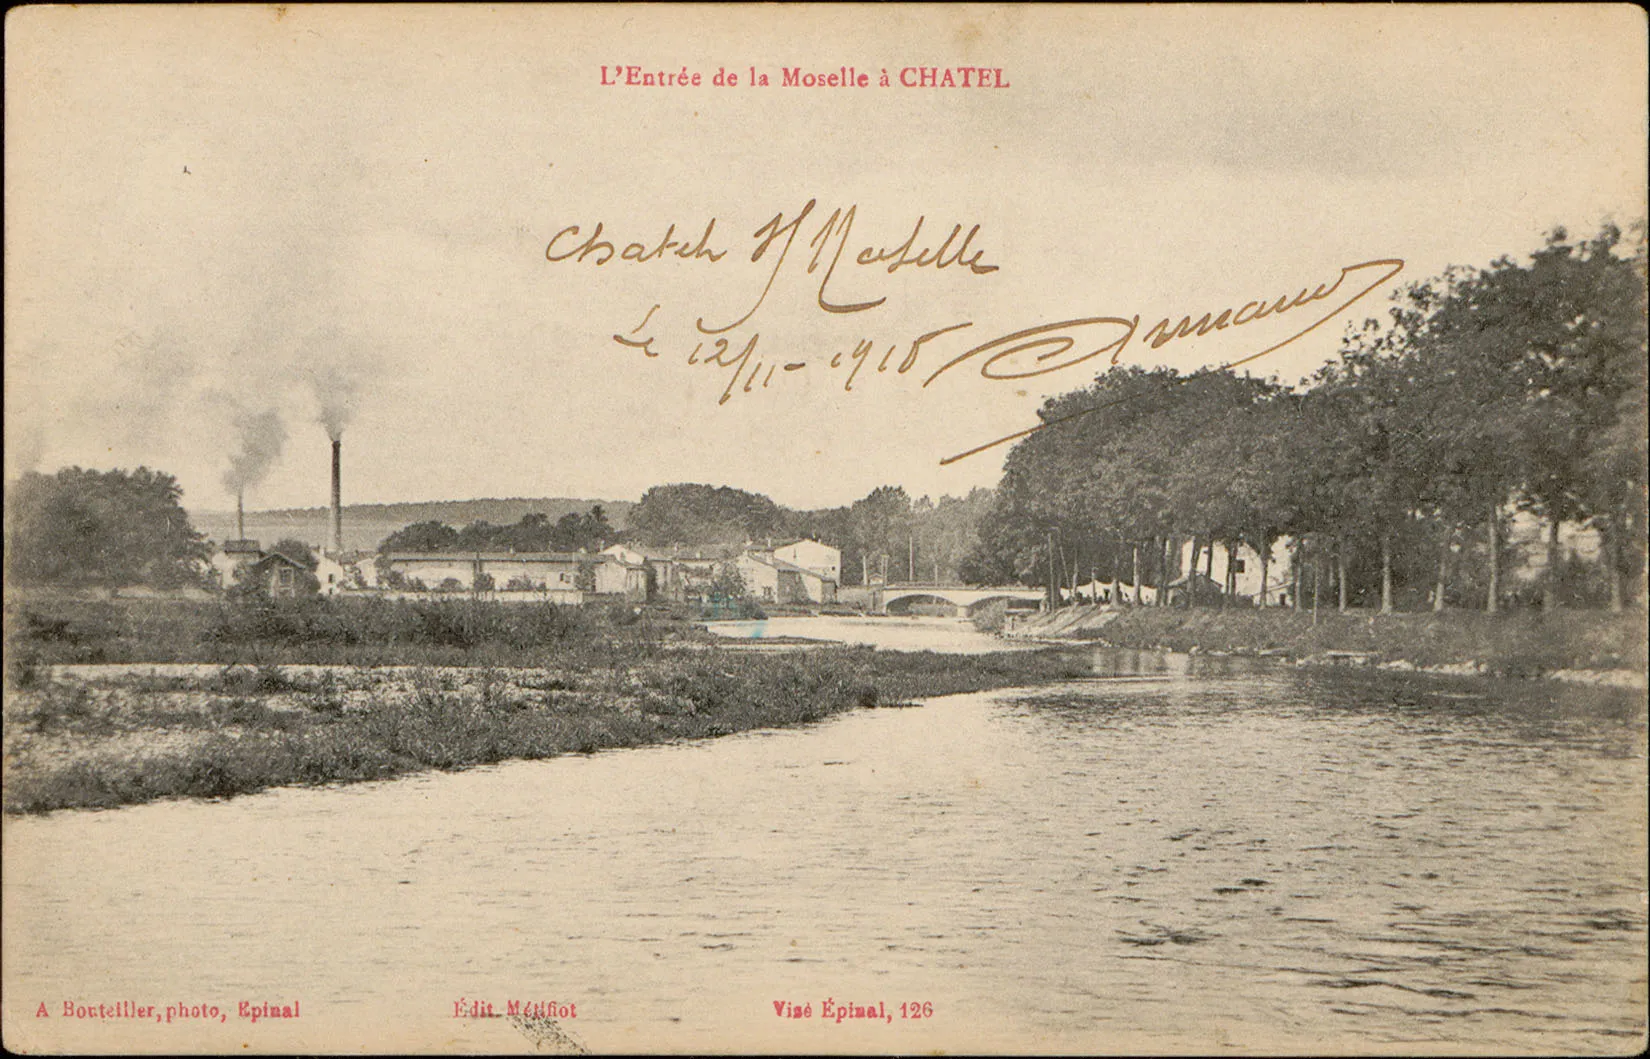 Photo showing: Carte postale n°126  Carte postale représentant l'entrée de la Moselle à Châtel